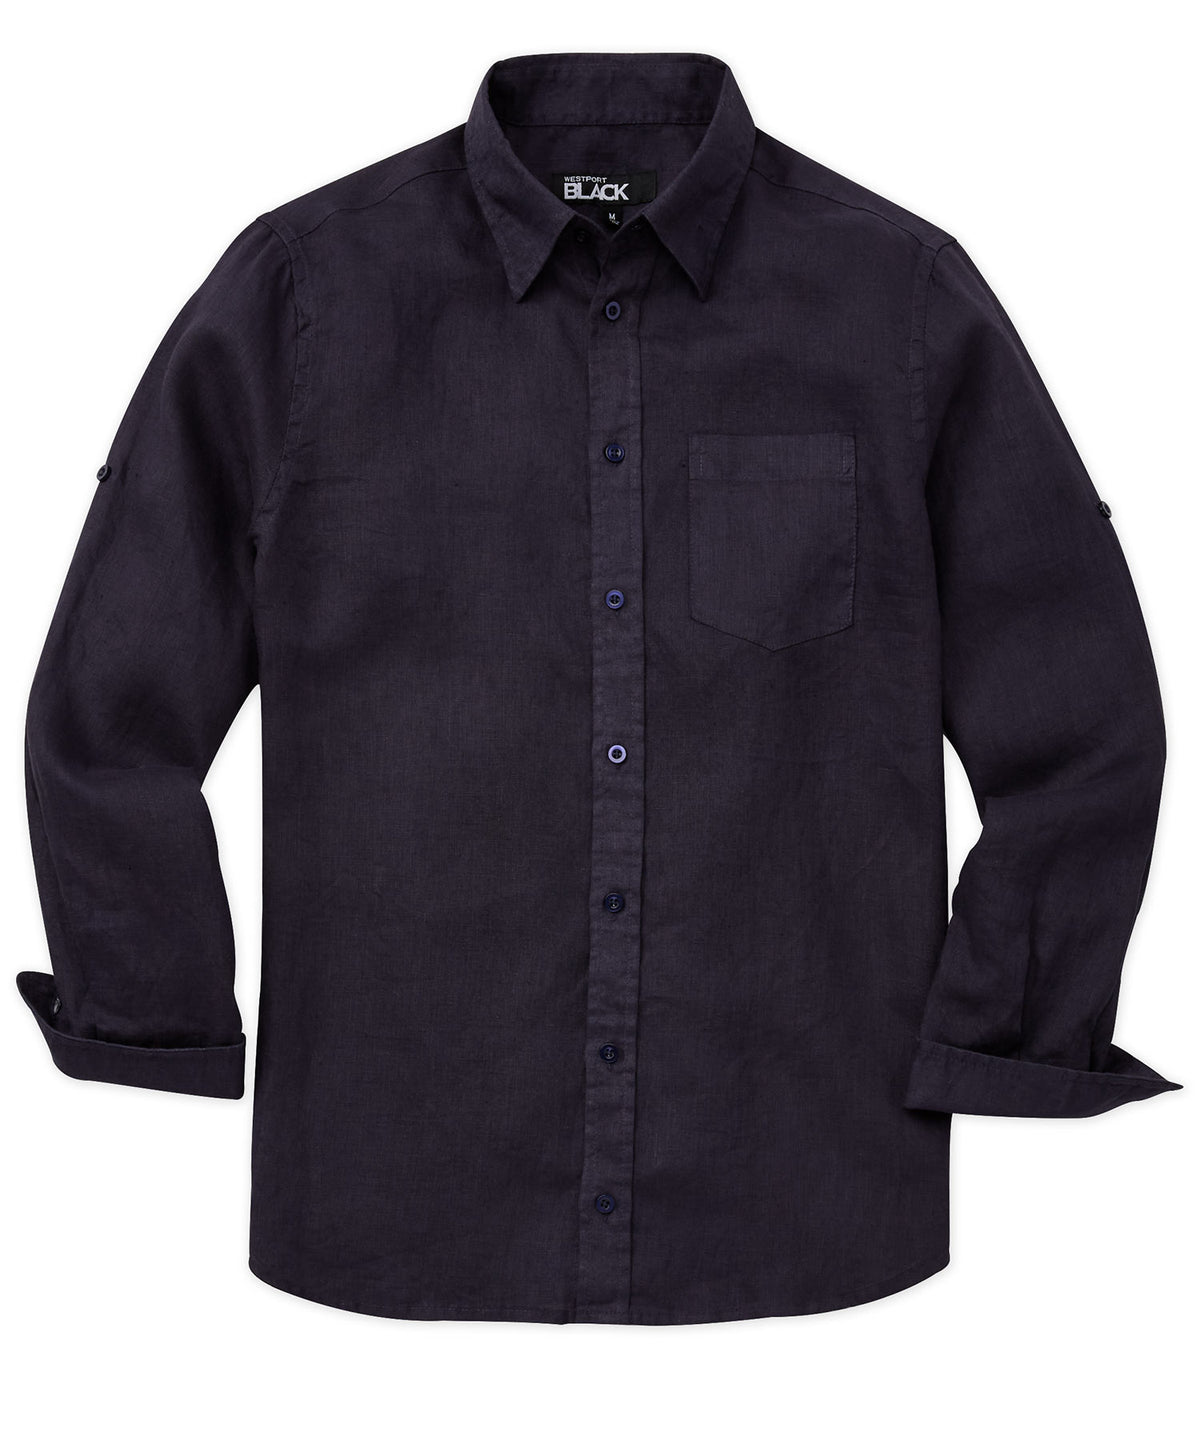 Westport Black Southport Long Sleeve Linen Sport Shirt, Big & Tall